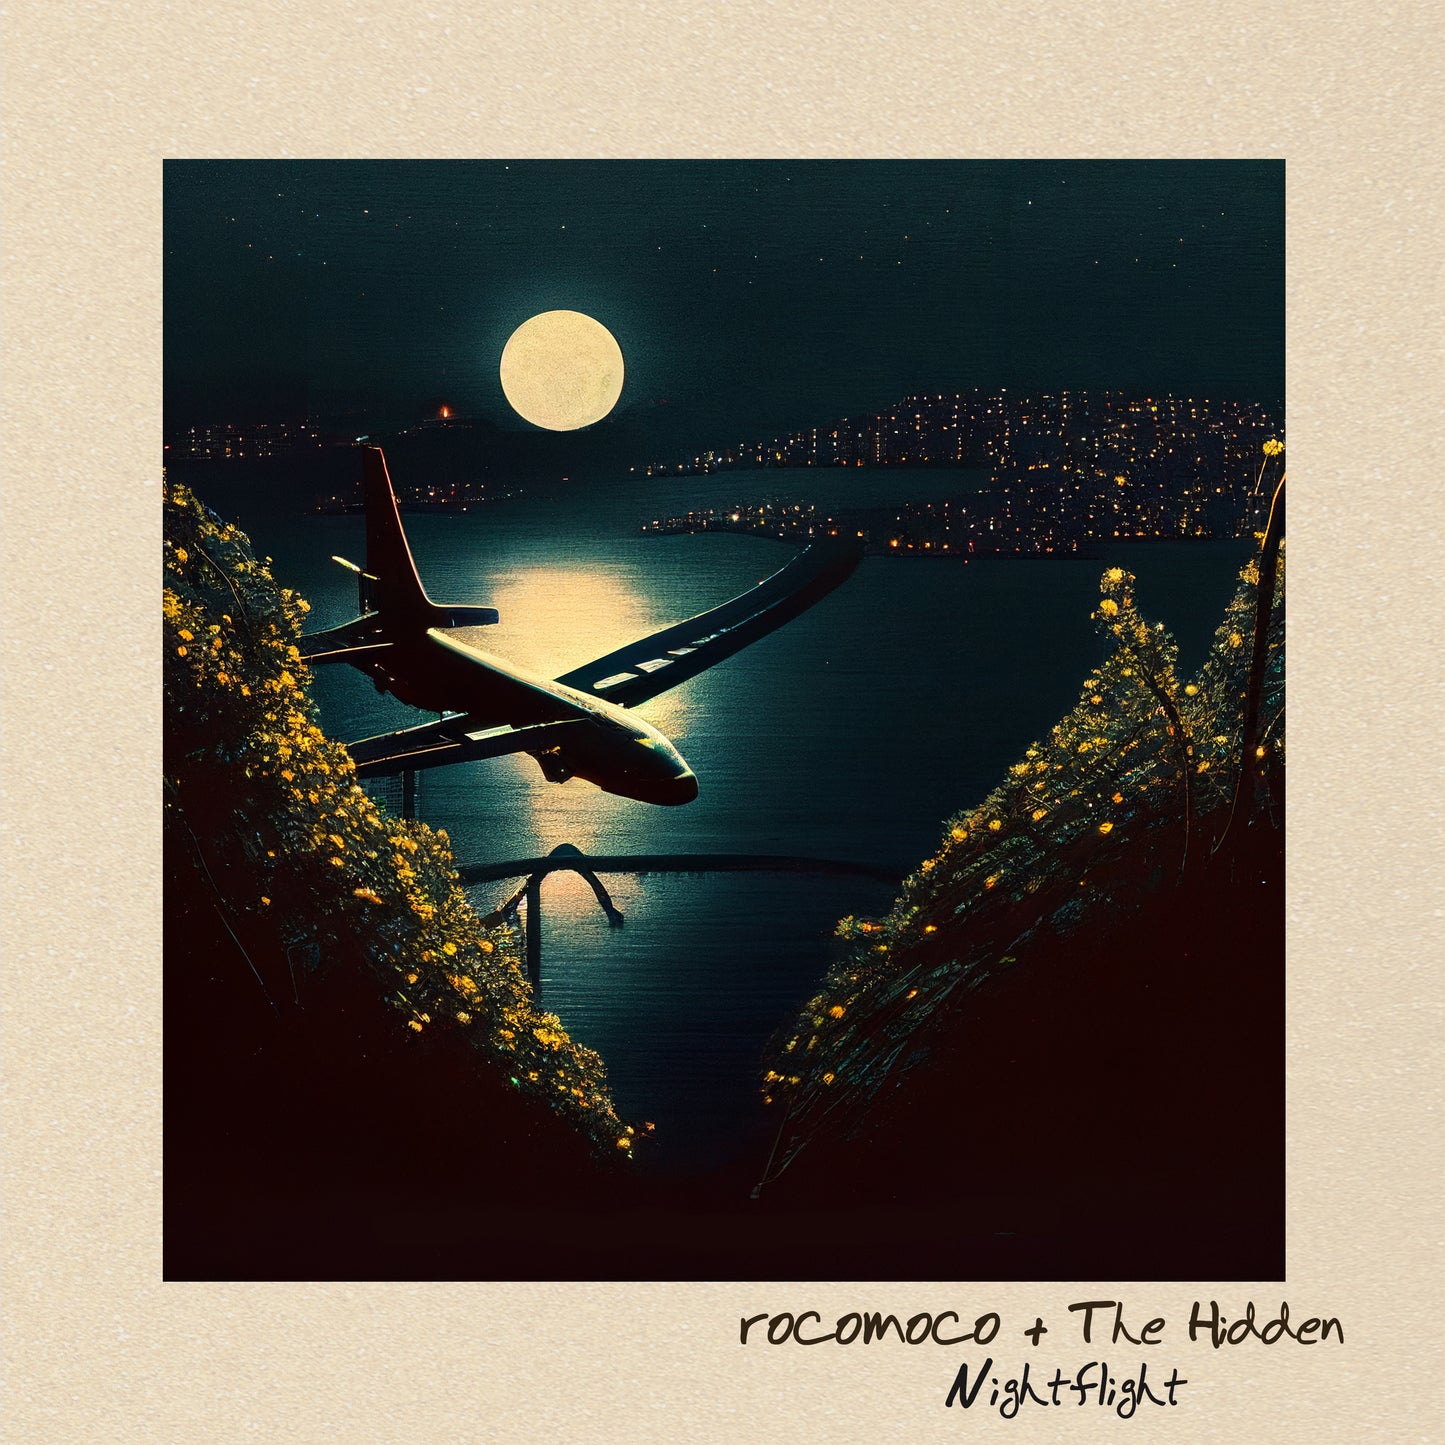 rocomoco & The Hidden - Night Flight